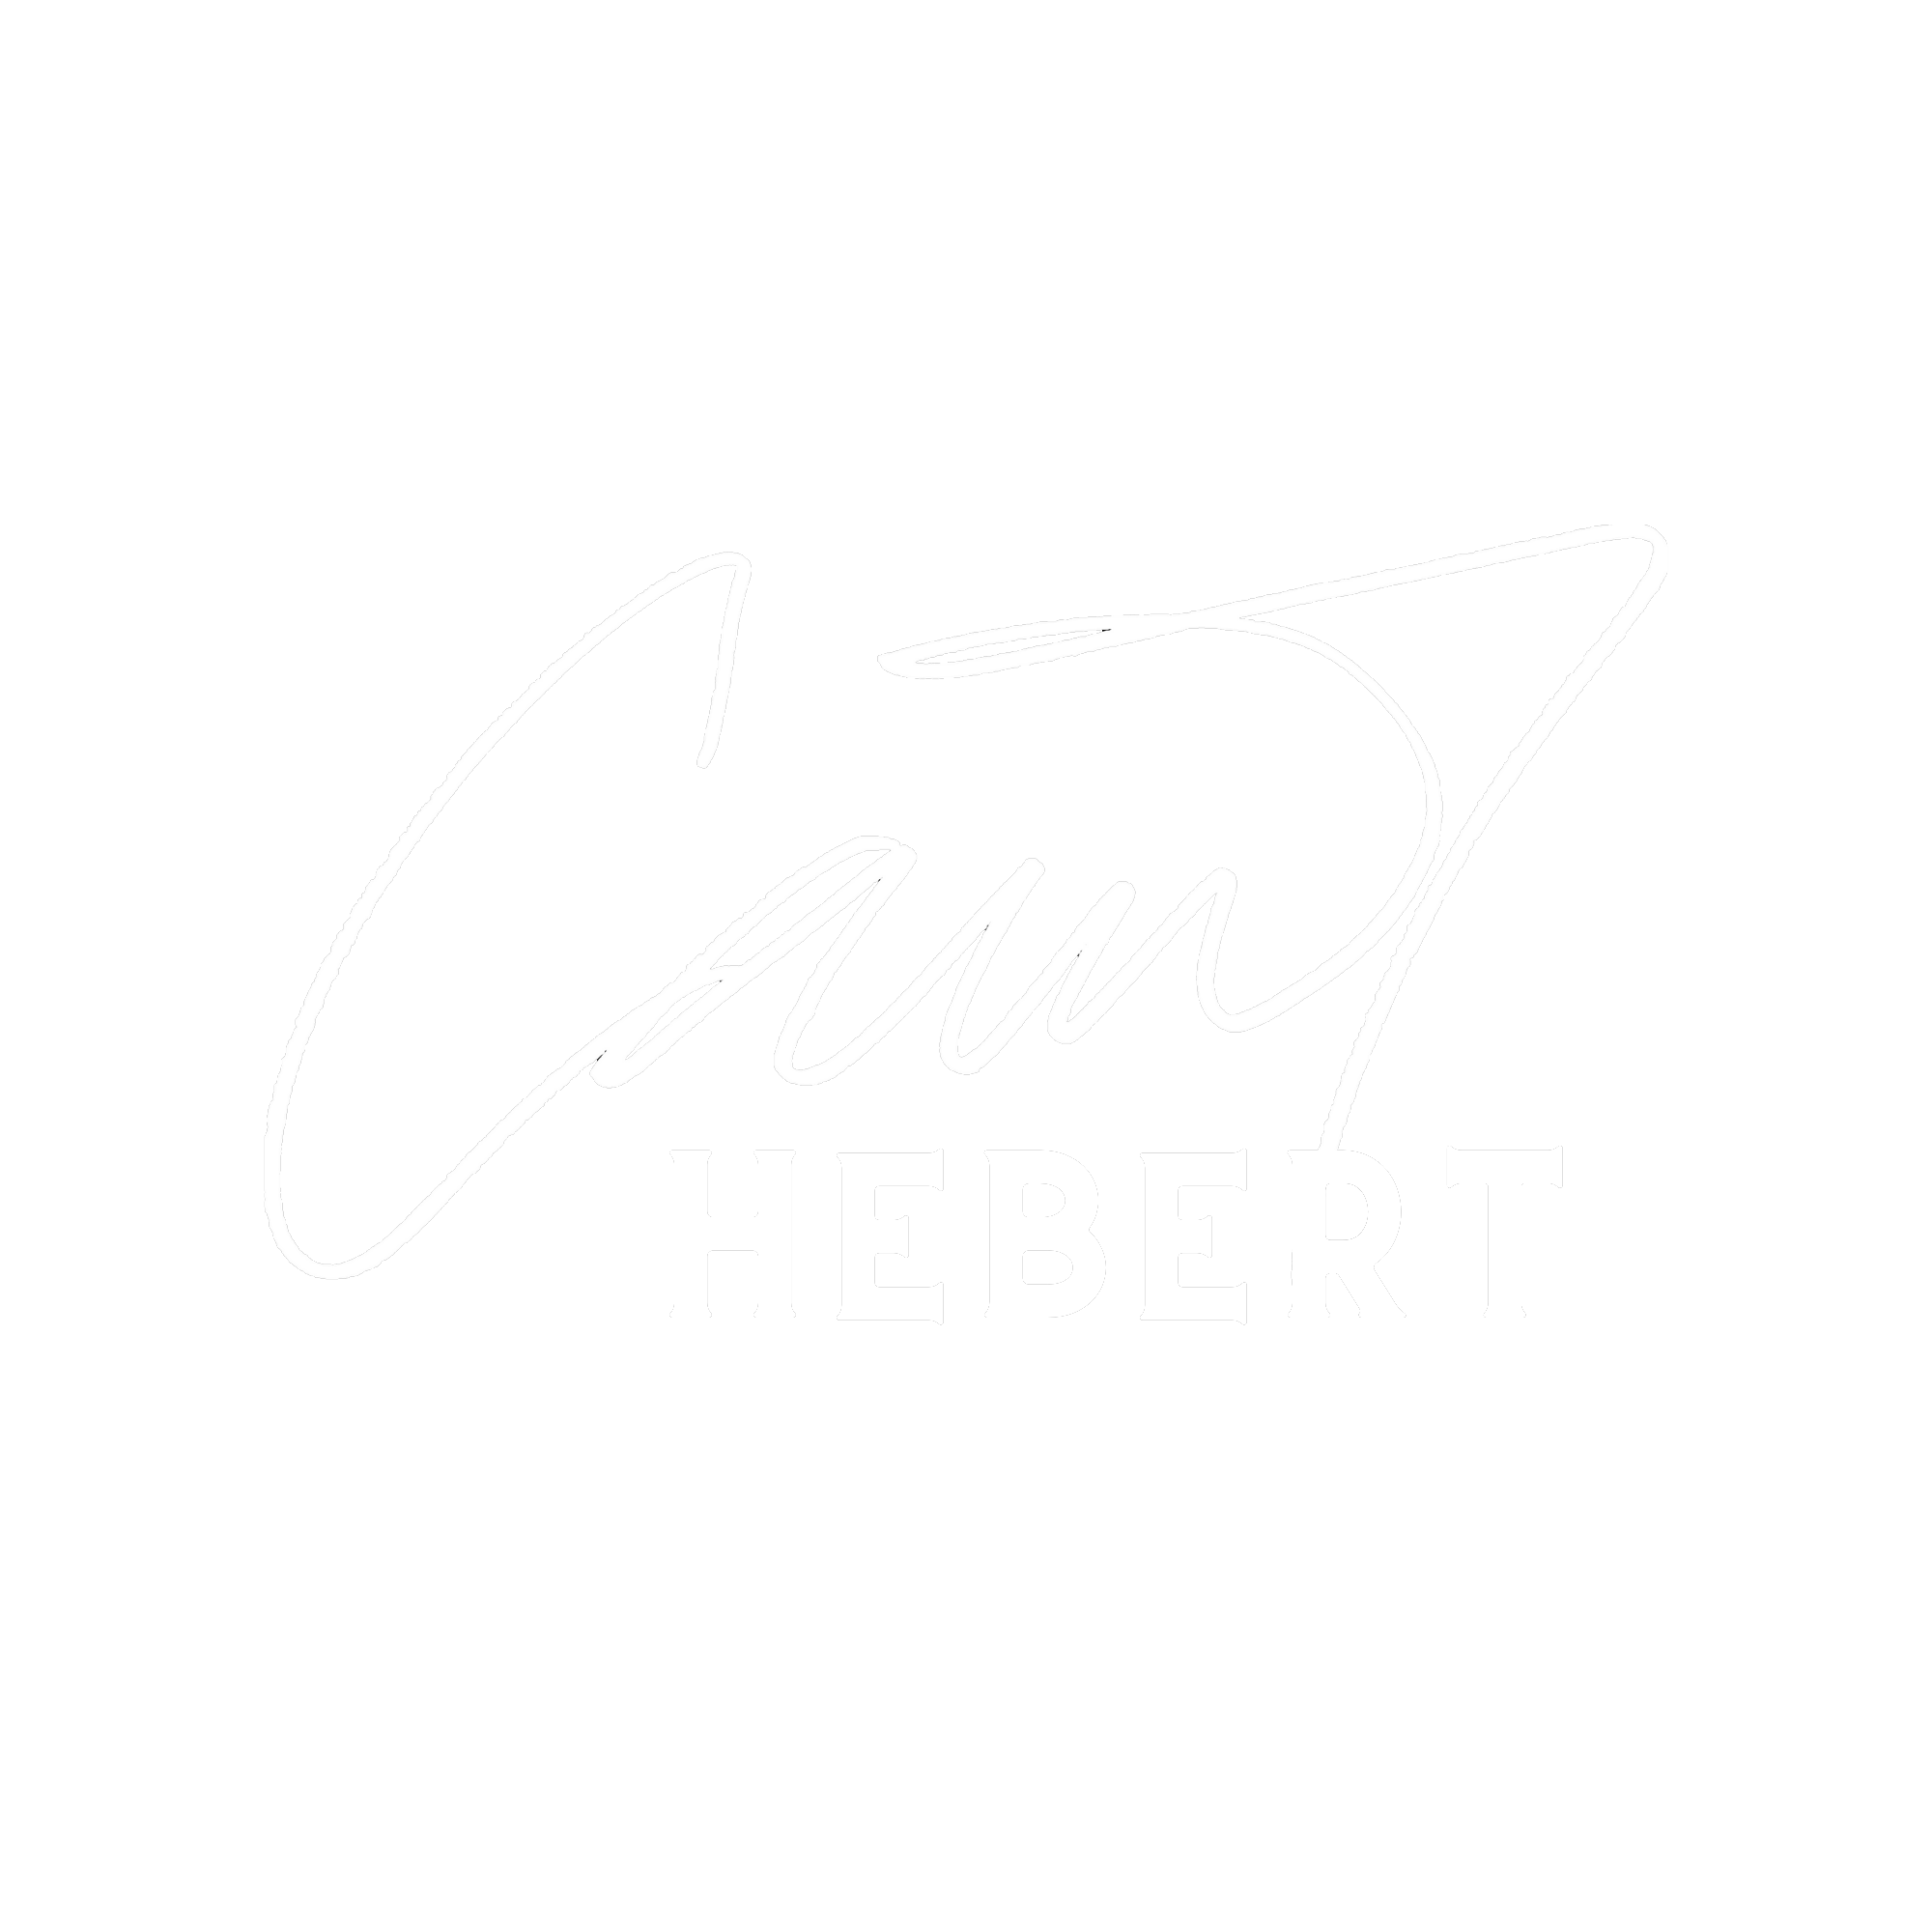 Camhebert Logo